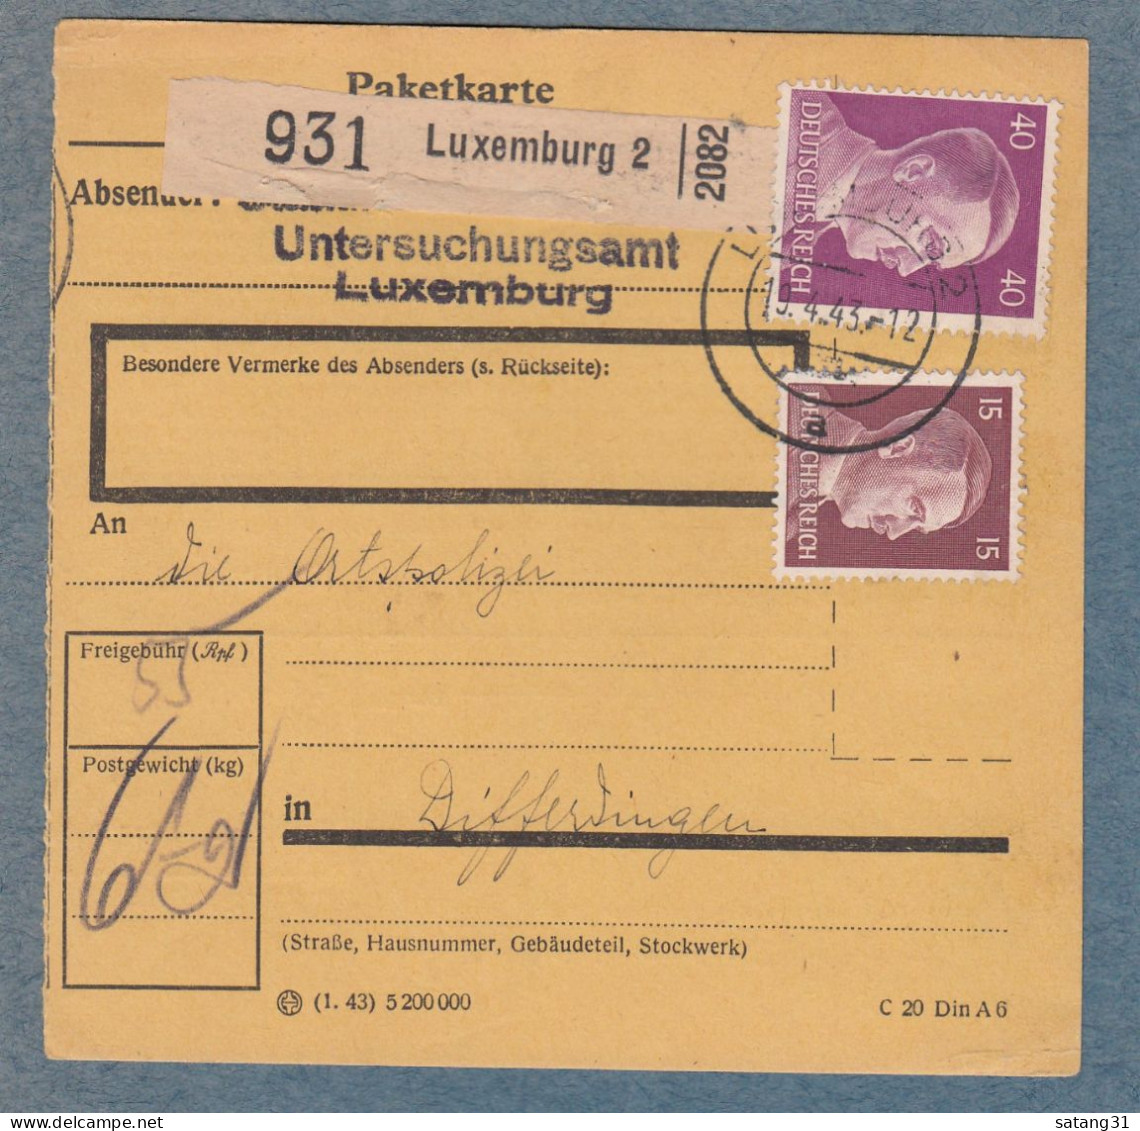 PAKETKARTE AUS DEM UNTERSUCHUNGSAMT IN LUXEMBURG AN DIE ORTSPOLIZEI IN DIFFERDINGEN. - 1940-1944 Occupation Allemande